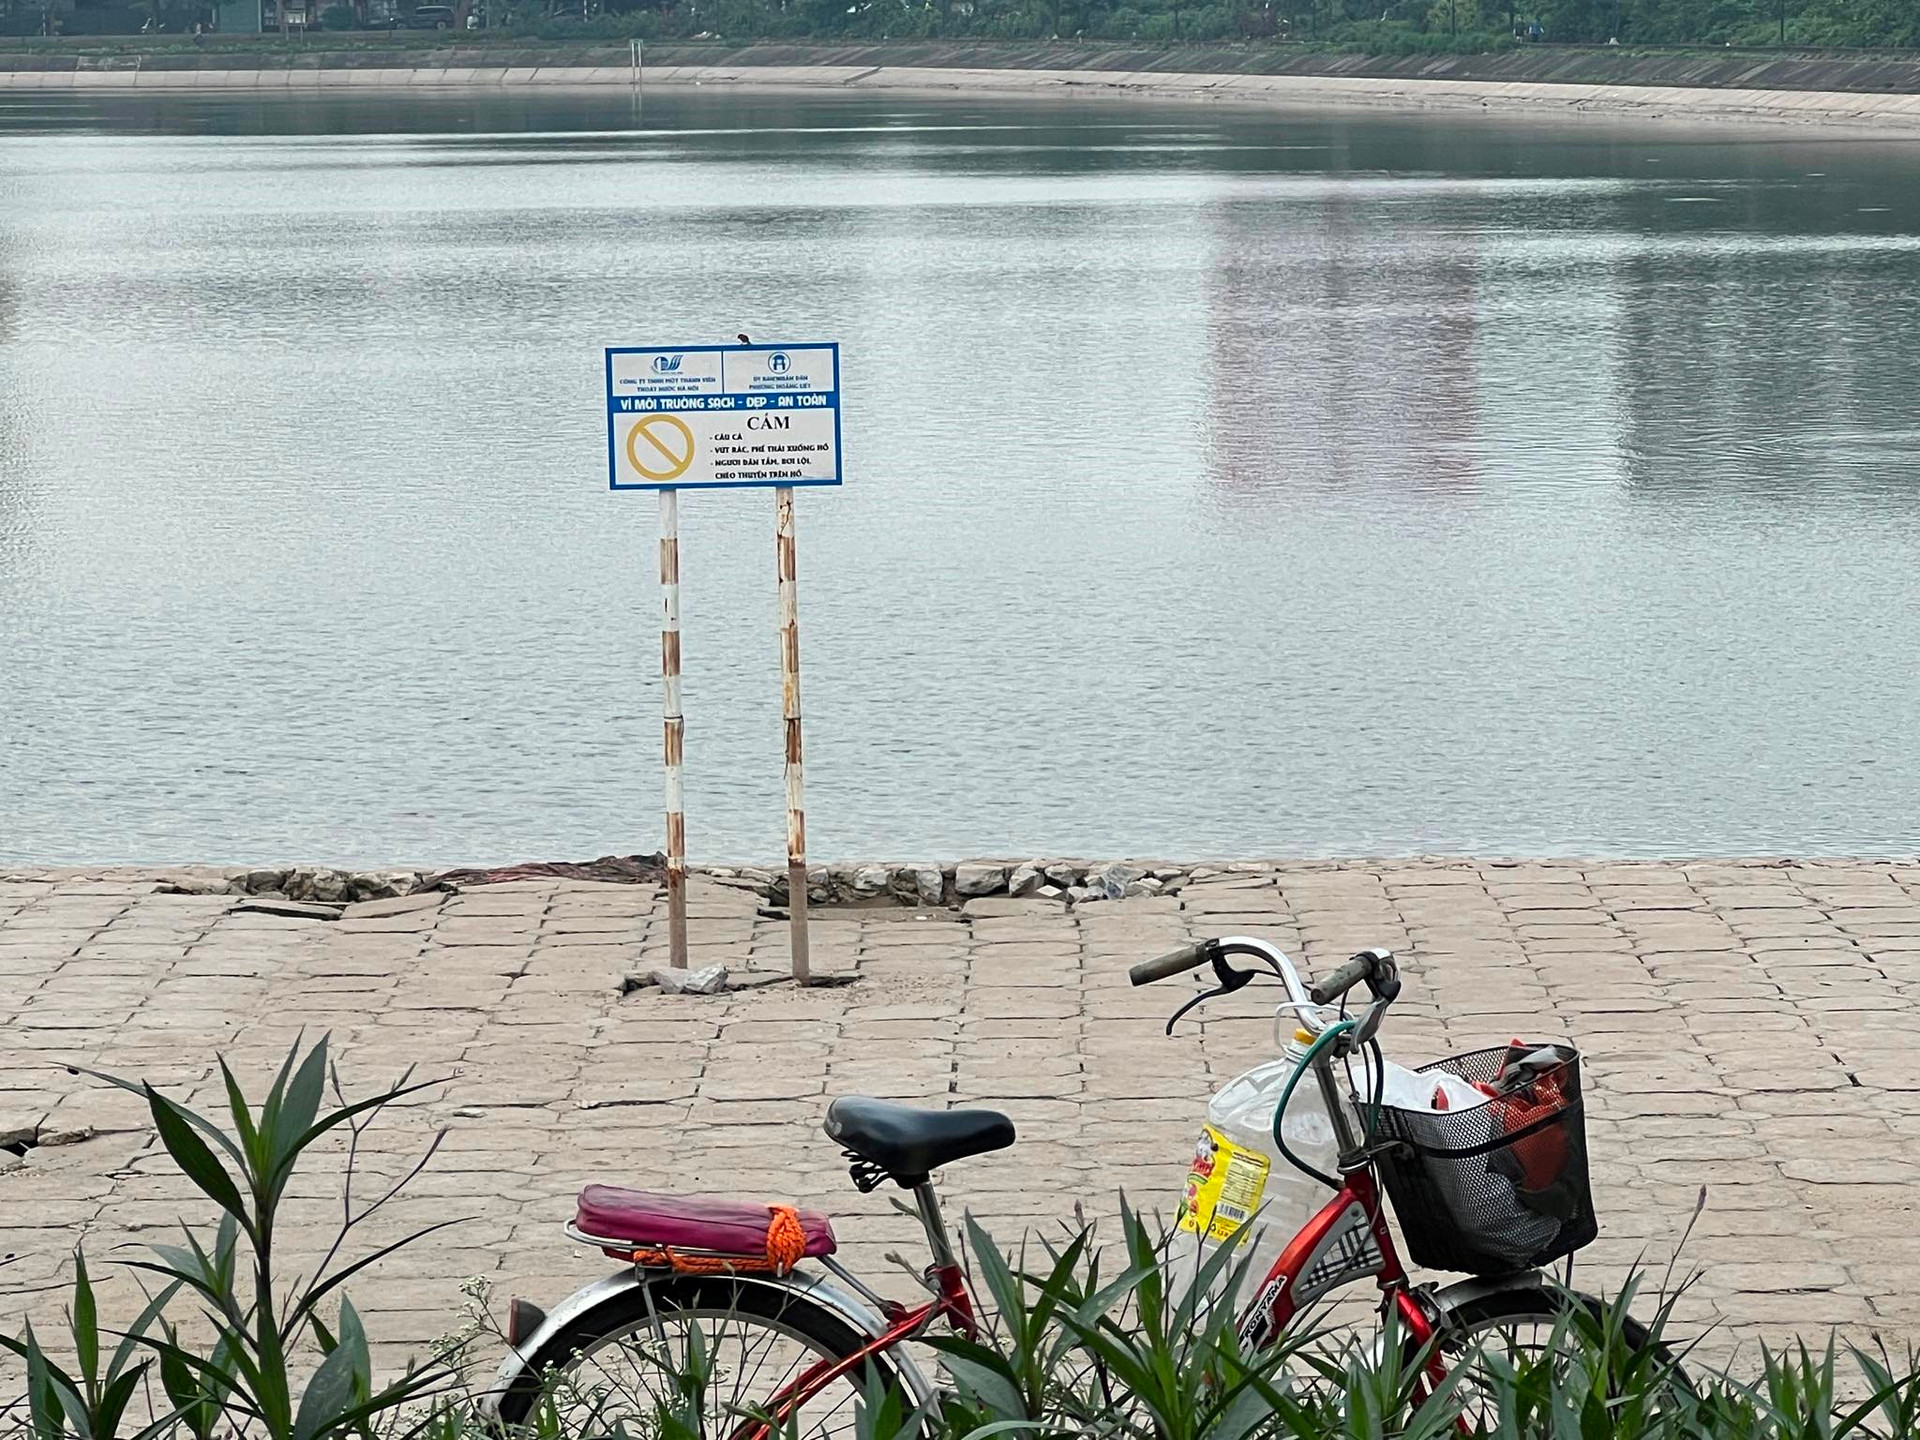 Cảnh báo cấm câu cá, cấm tắm trên hồ Linh Đàm. Ảnh: Chu Dũng.